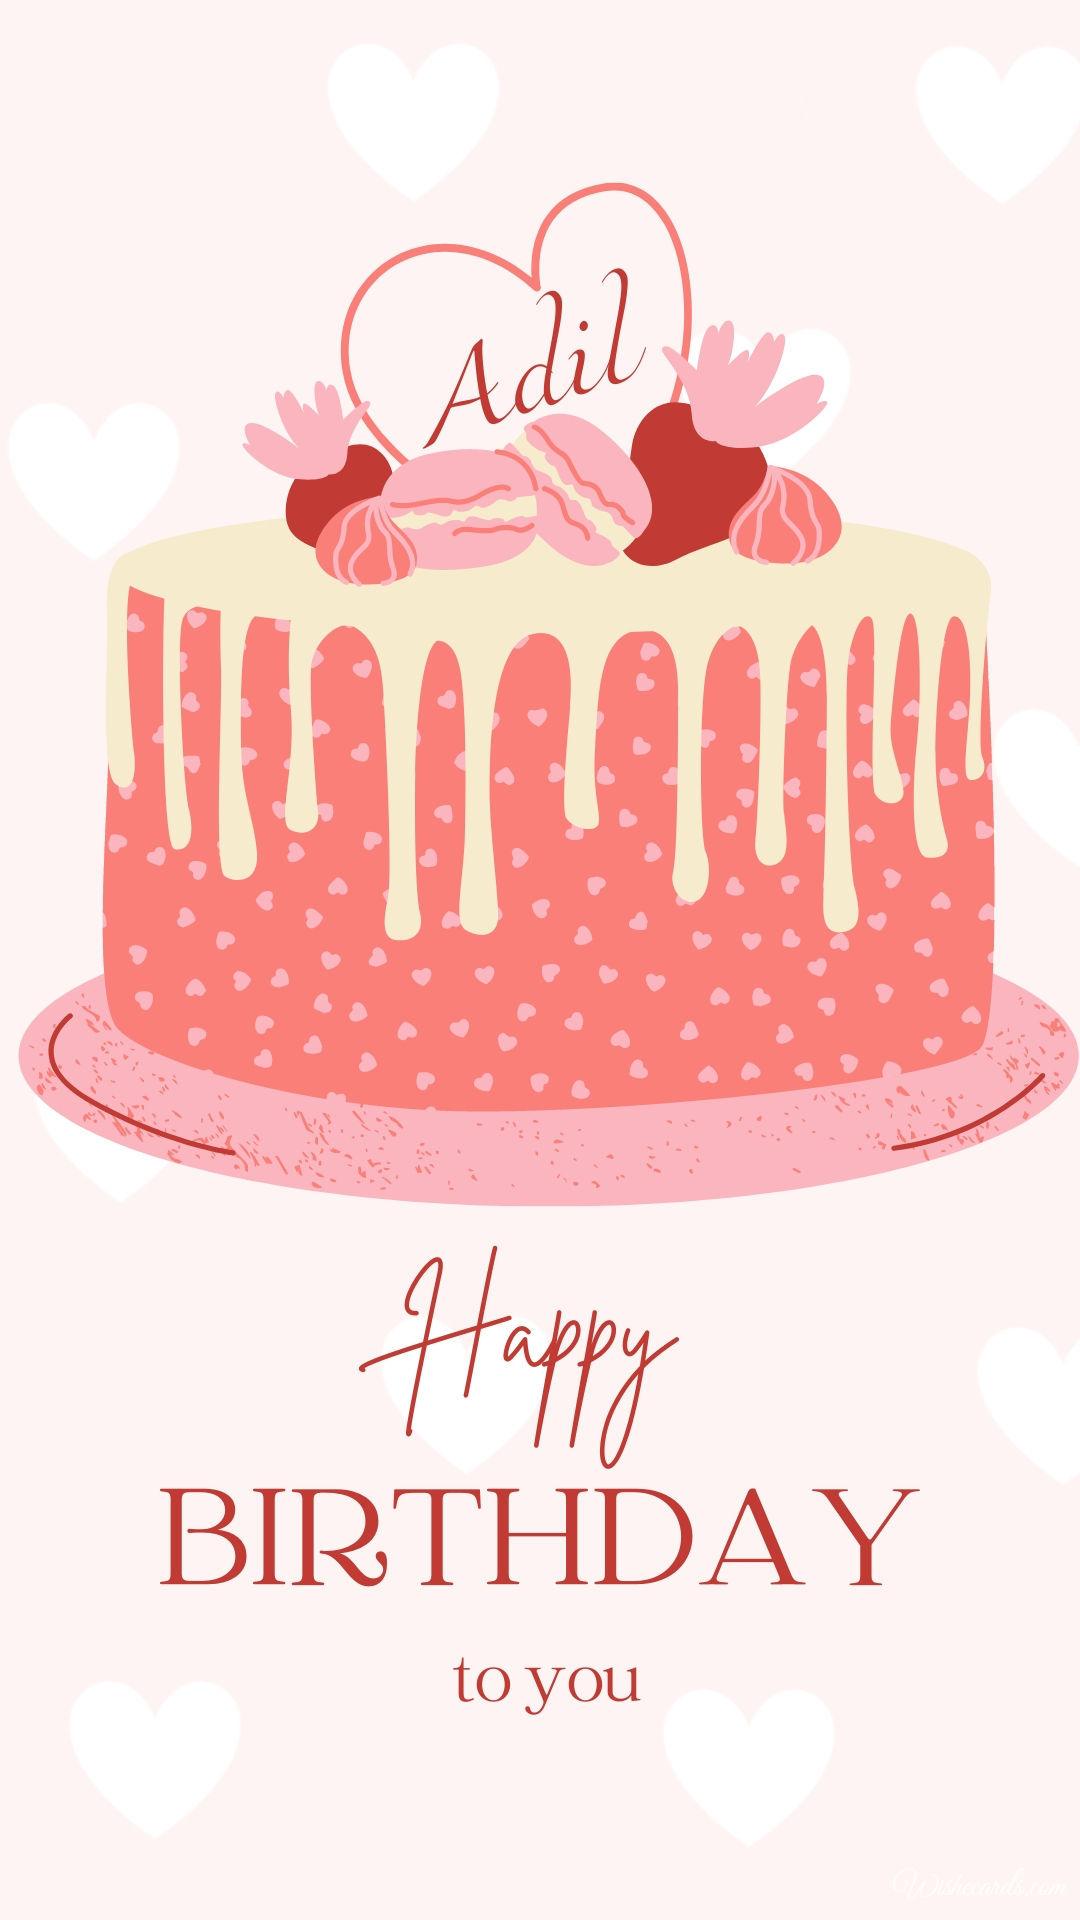 Happy Birthday Adil Cake